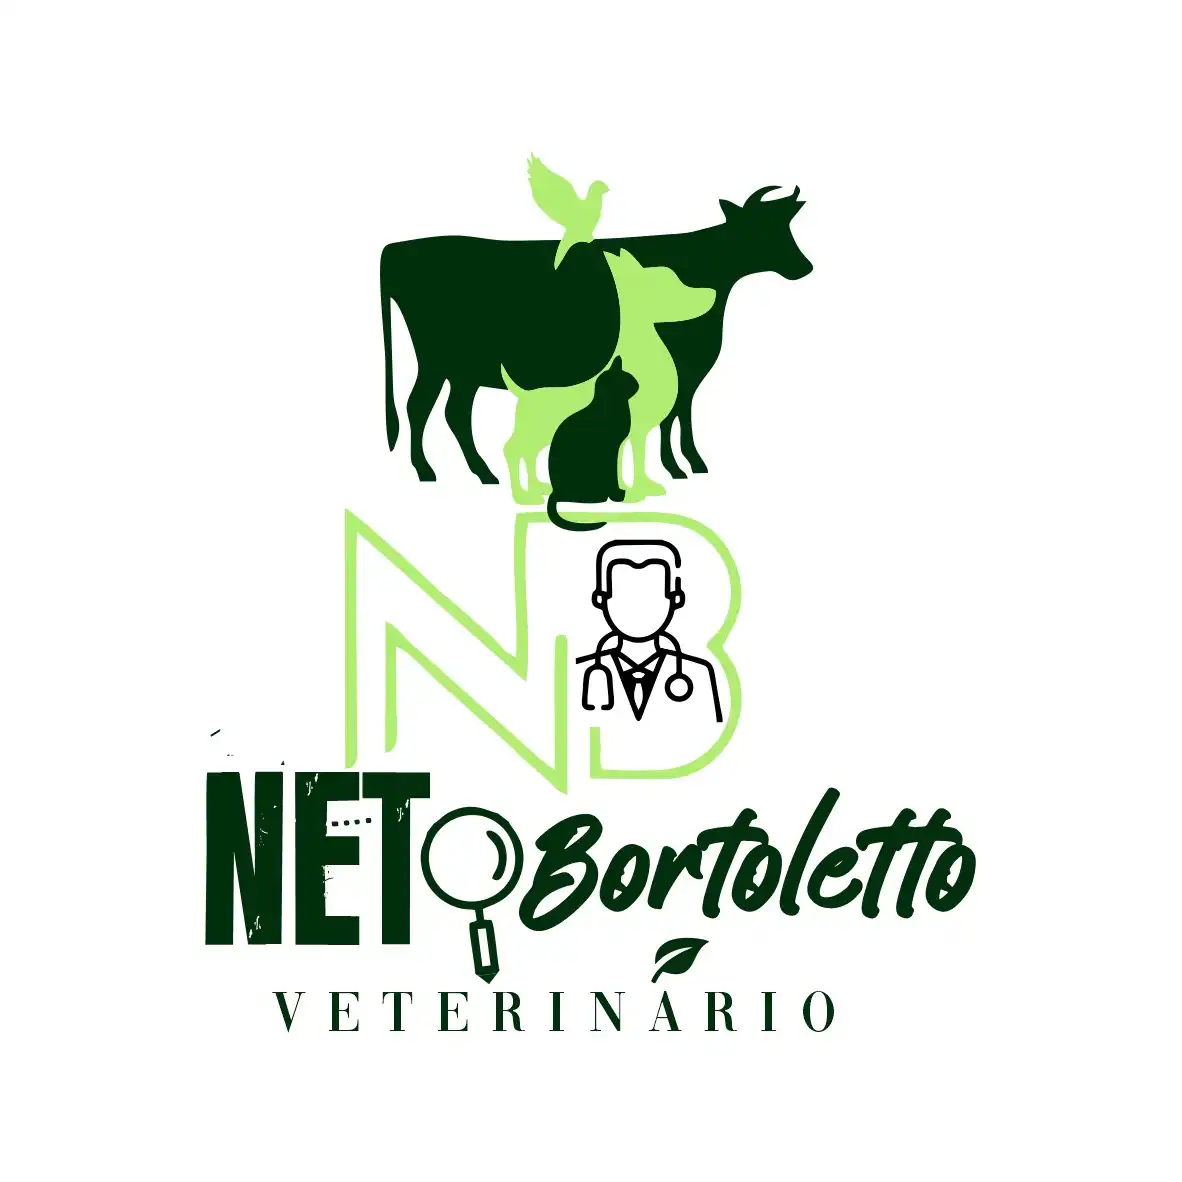 
Logotipo Logomarca Veterinário



